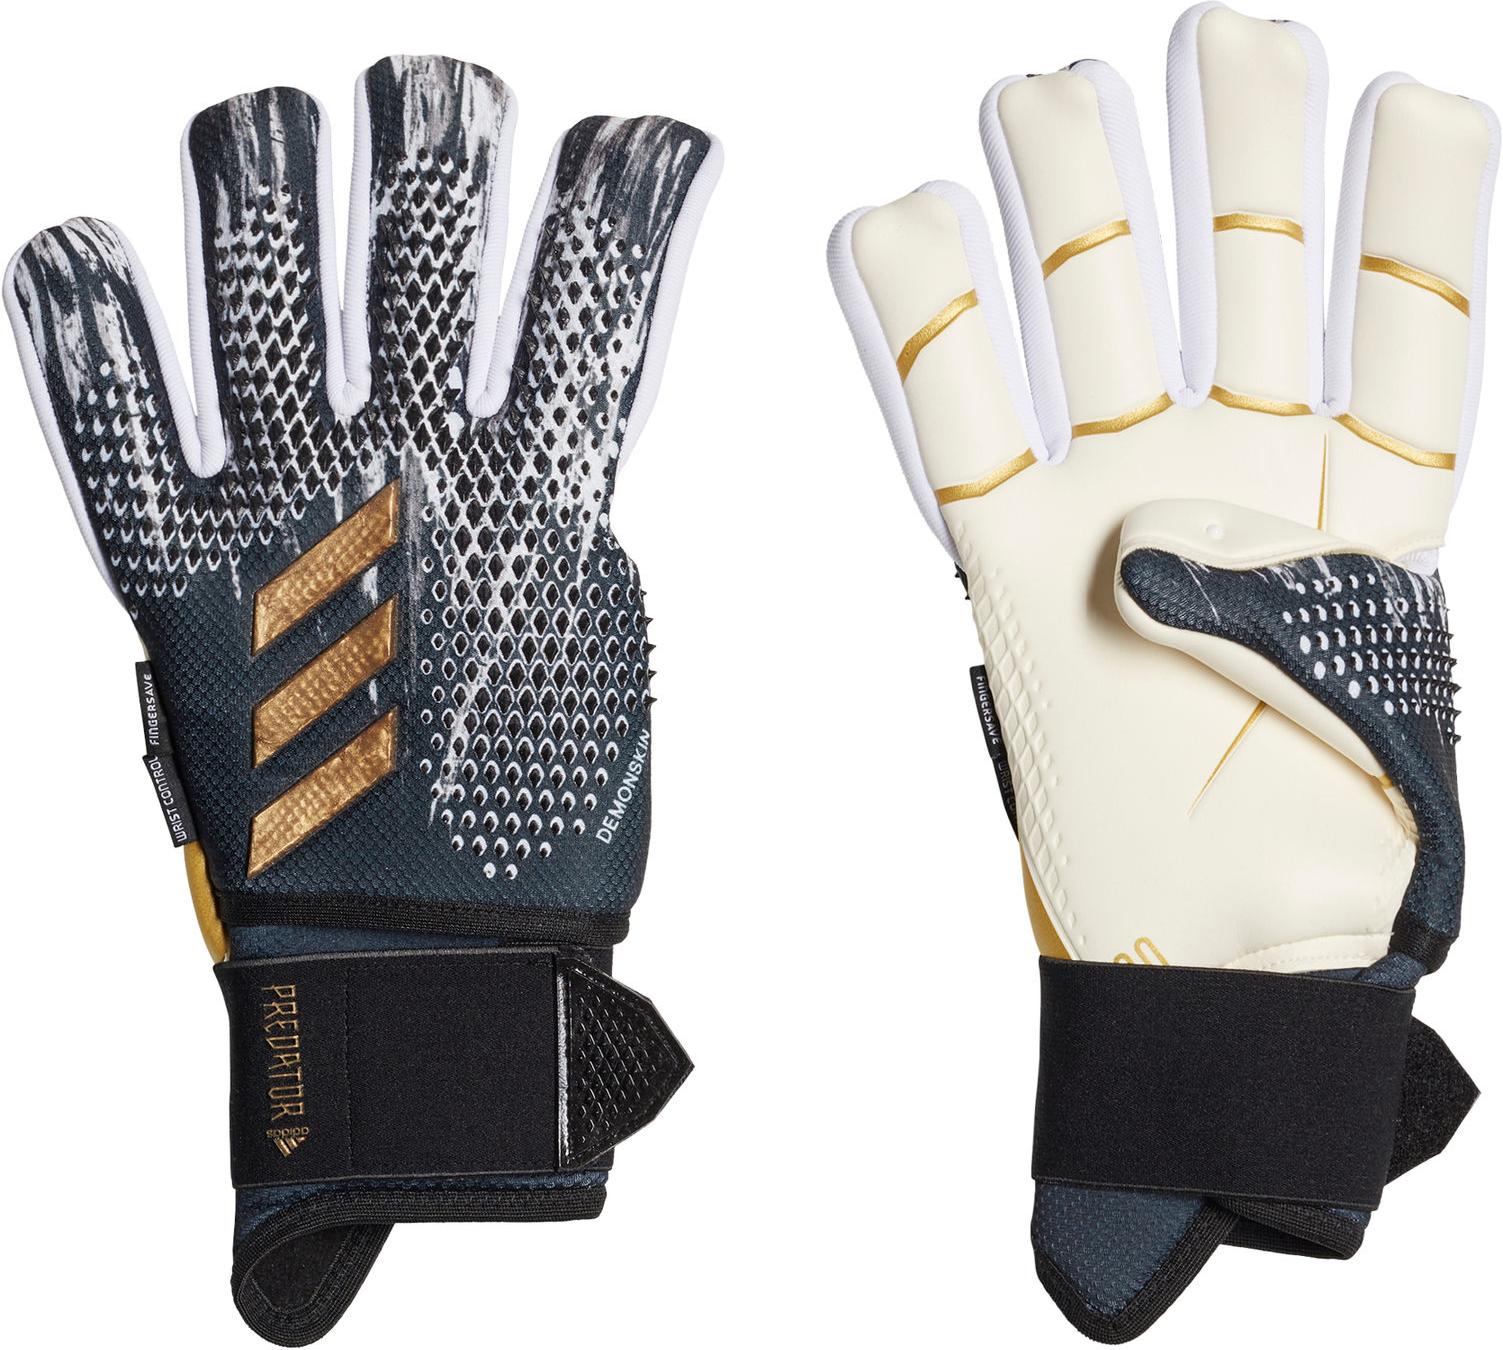 Goalkeeper's gloves adidas PRED GL PRO ULT RFS